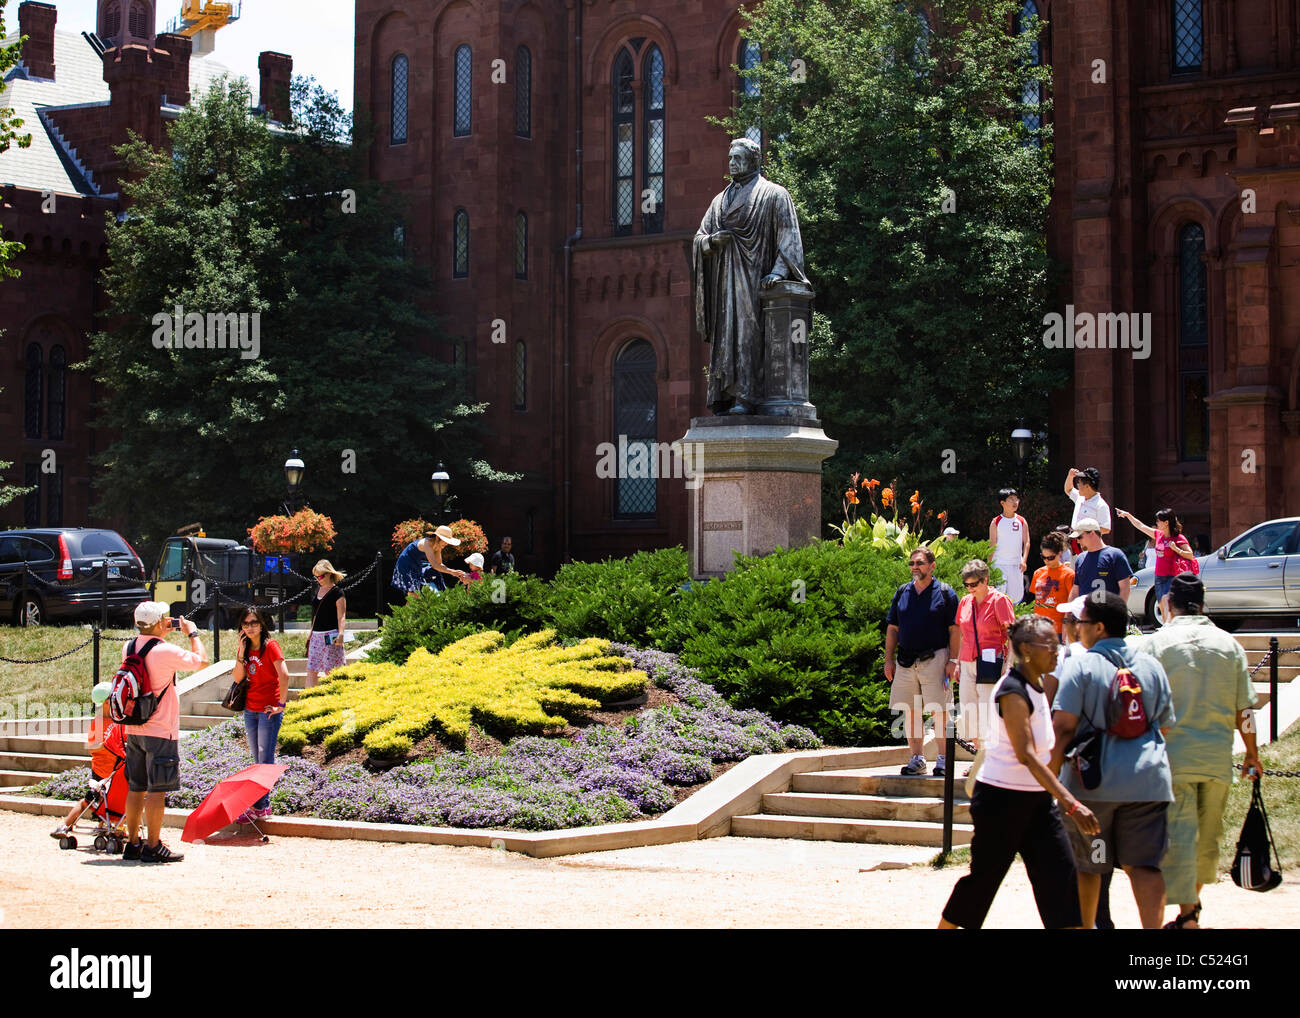 Los turistas tomando fotos delante de la estatua de Joseph Henry - La Smithsonian Institution, Washington, DC, EE.UU. Foto de stock